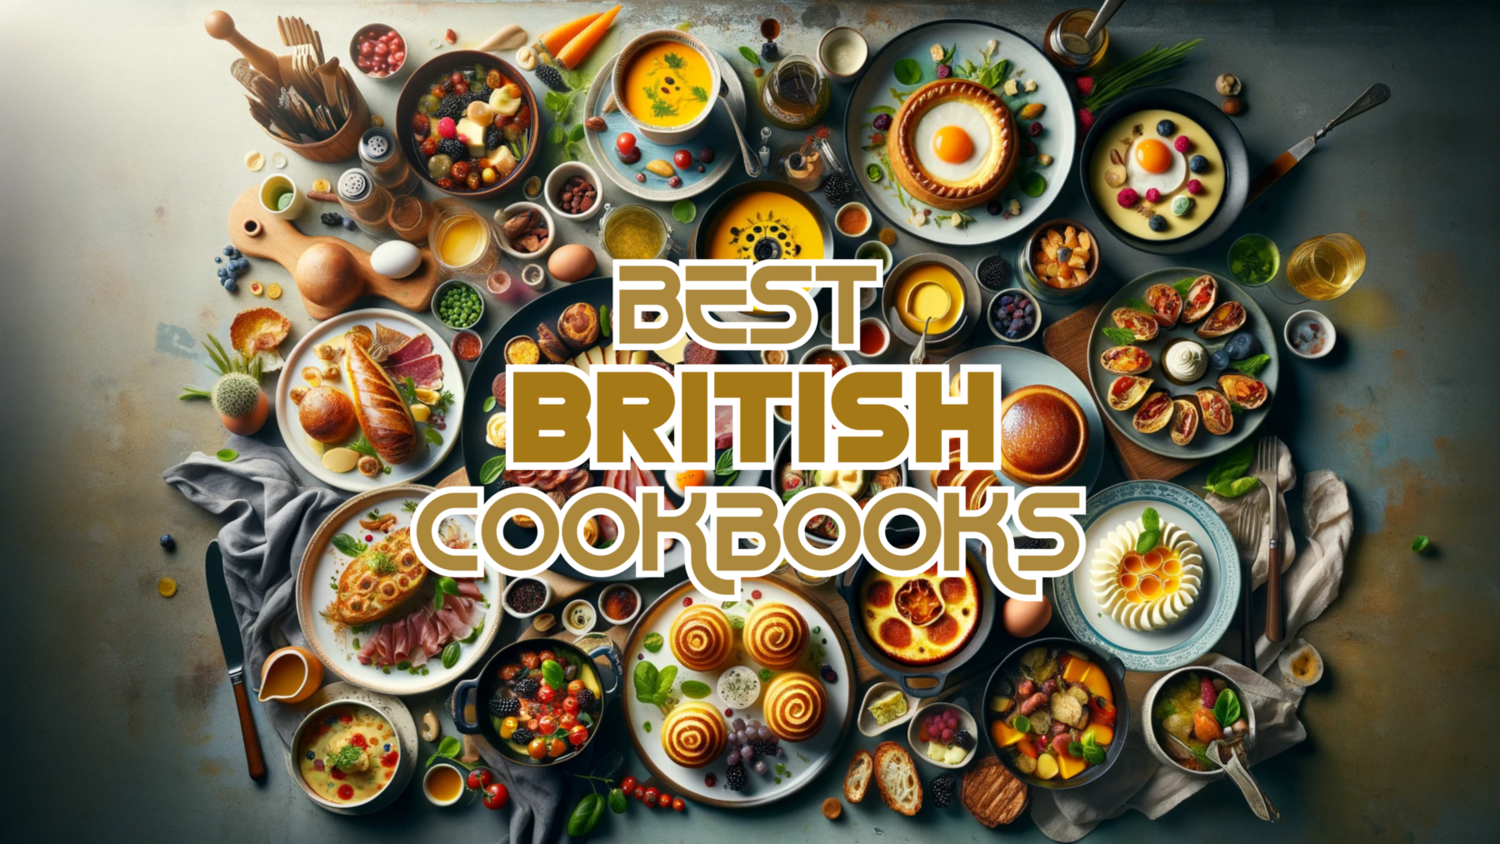 Best British Cookbooks